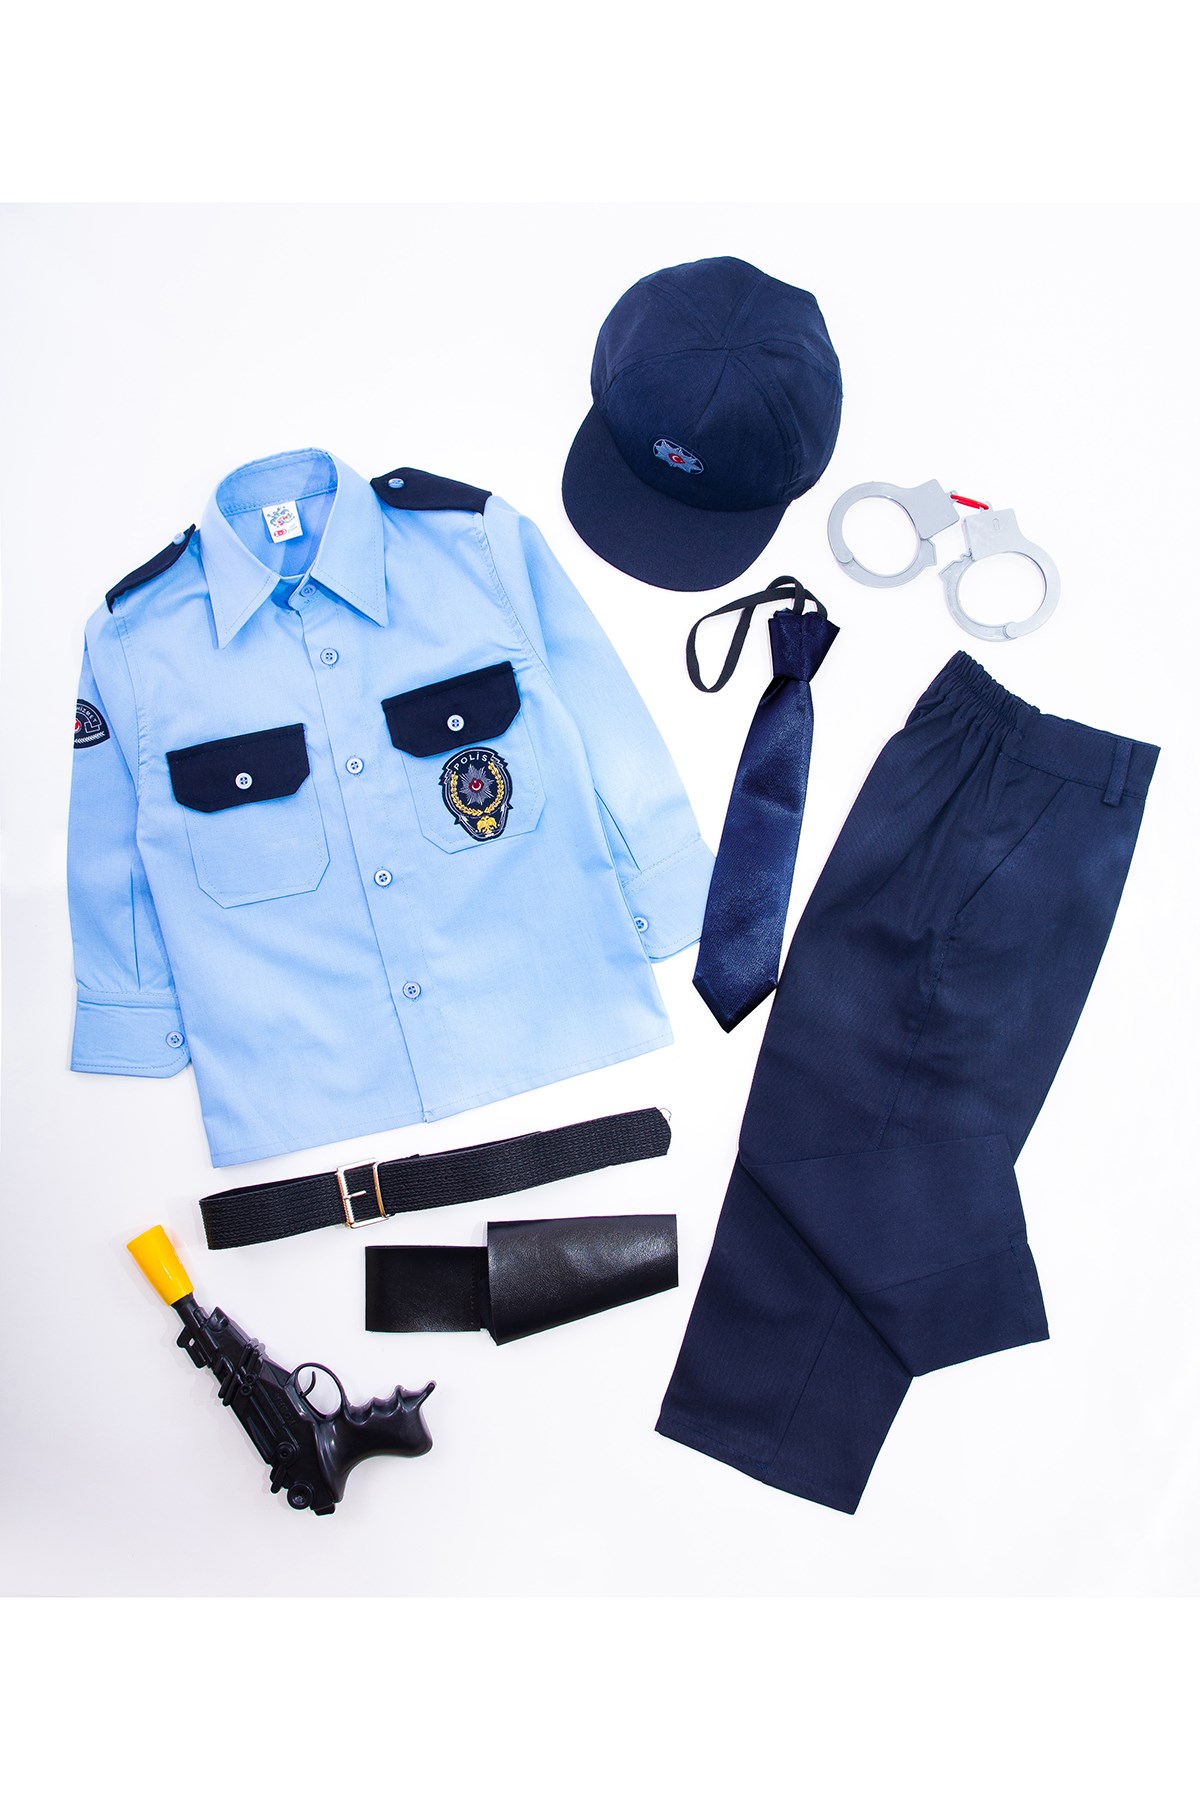 Türk Polisi Kostümü - Polis Kostümleri - Çocuk Polis Kıyafetleri - Oulabi  Mir